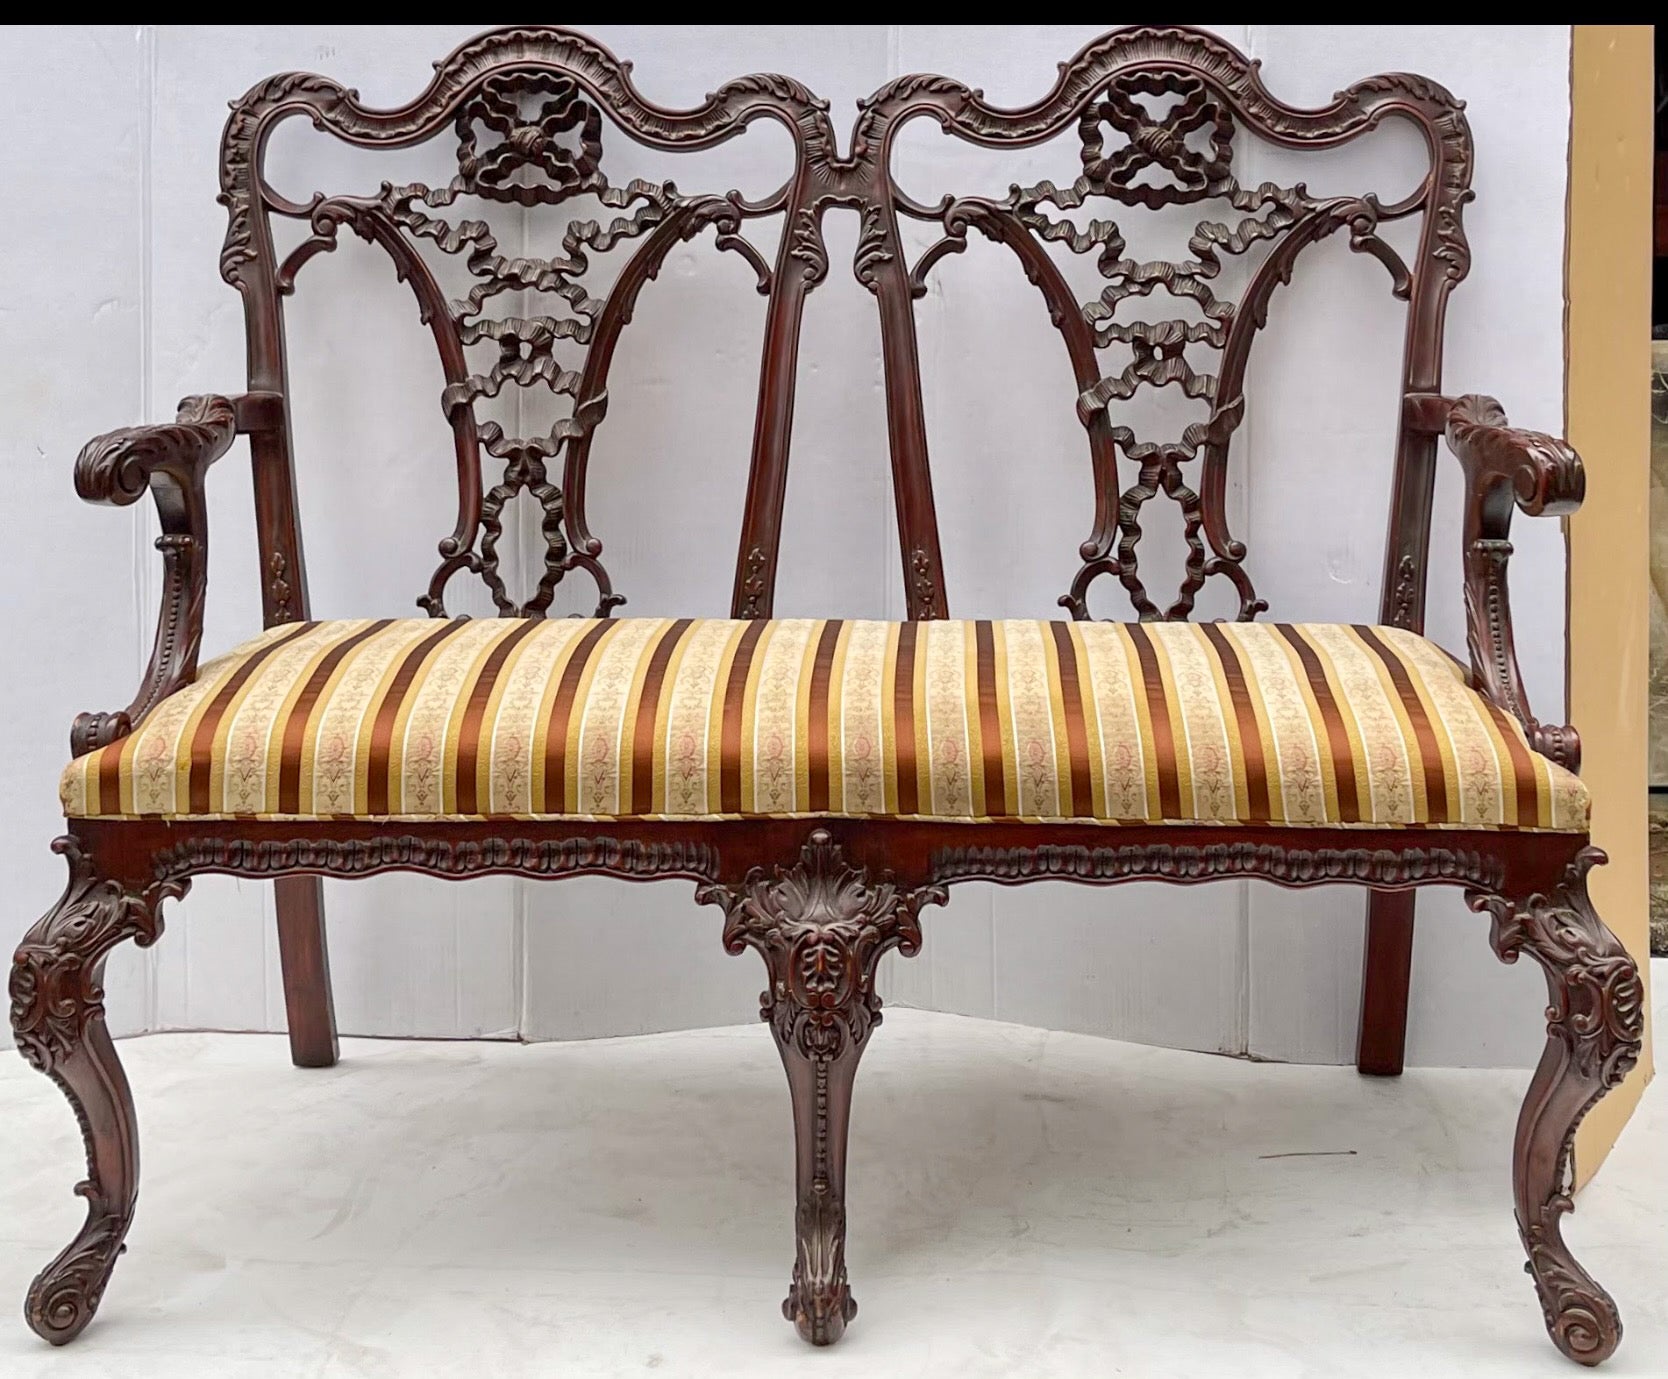 So ein schöner Rücken! Dies ist ein frühes englisches Mahagoni-Sofa im chinesischen Chippendale-Stil. Die Schnitzerei ist erstaunlich! Die gestreifte Vintage-Polsterung ist in sehr gutem Zustand. Es ist nicht gekennzeichnet. 
Mein Versand ist nur